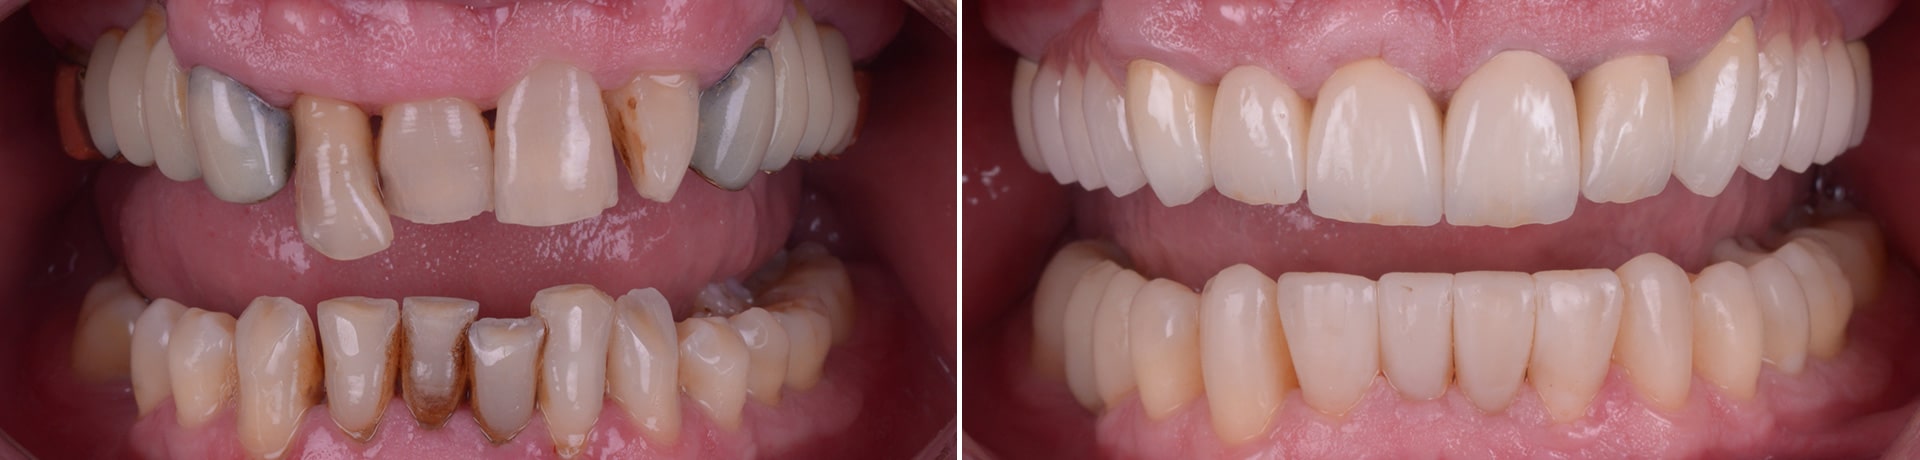 reabilitare complexa punti si coroane dentare reconstructii din compozit alungiri coronare clinica dentara timisoara clinica rugina stomatologie